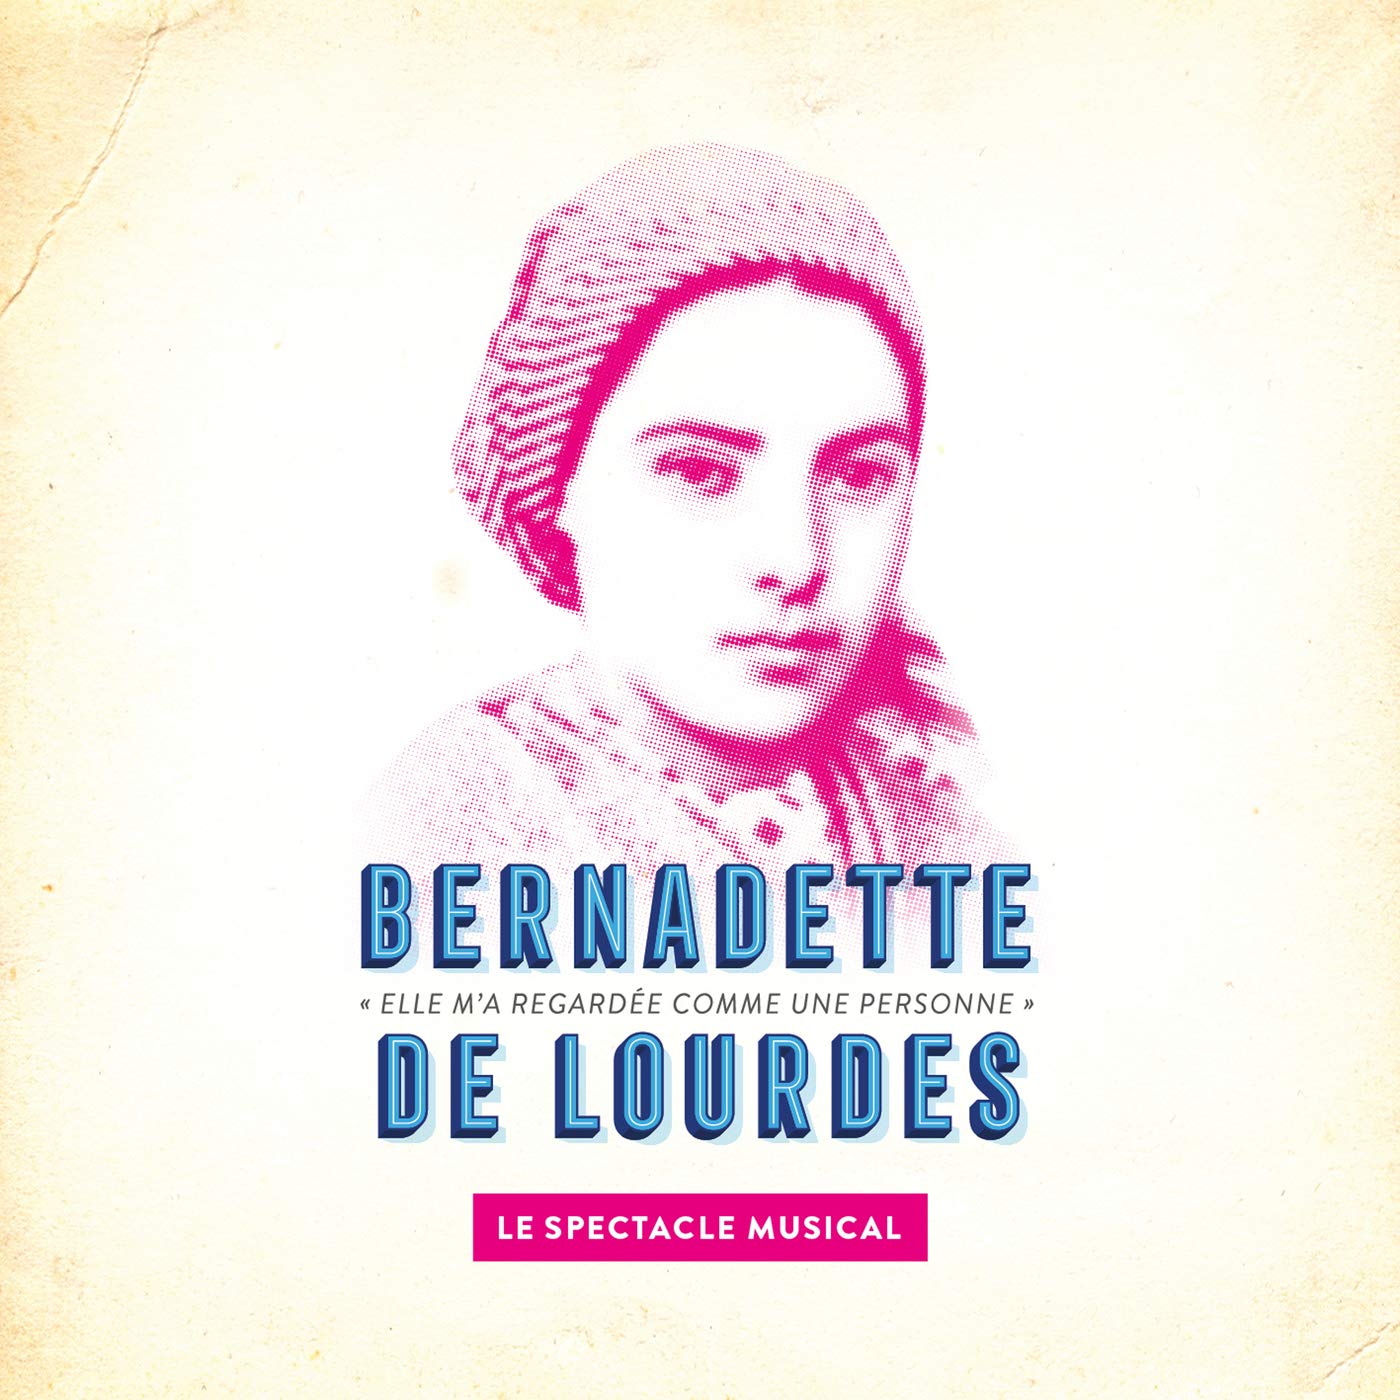 Bernadette De Lourdes - Le Spectacle Musical at Palais des Sports - Dome de Paris Tickets